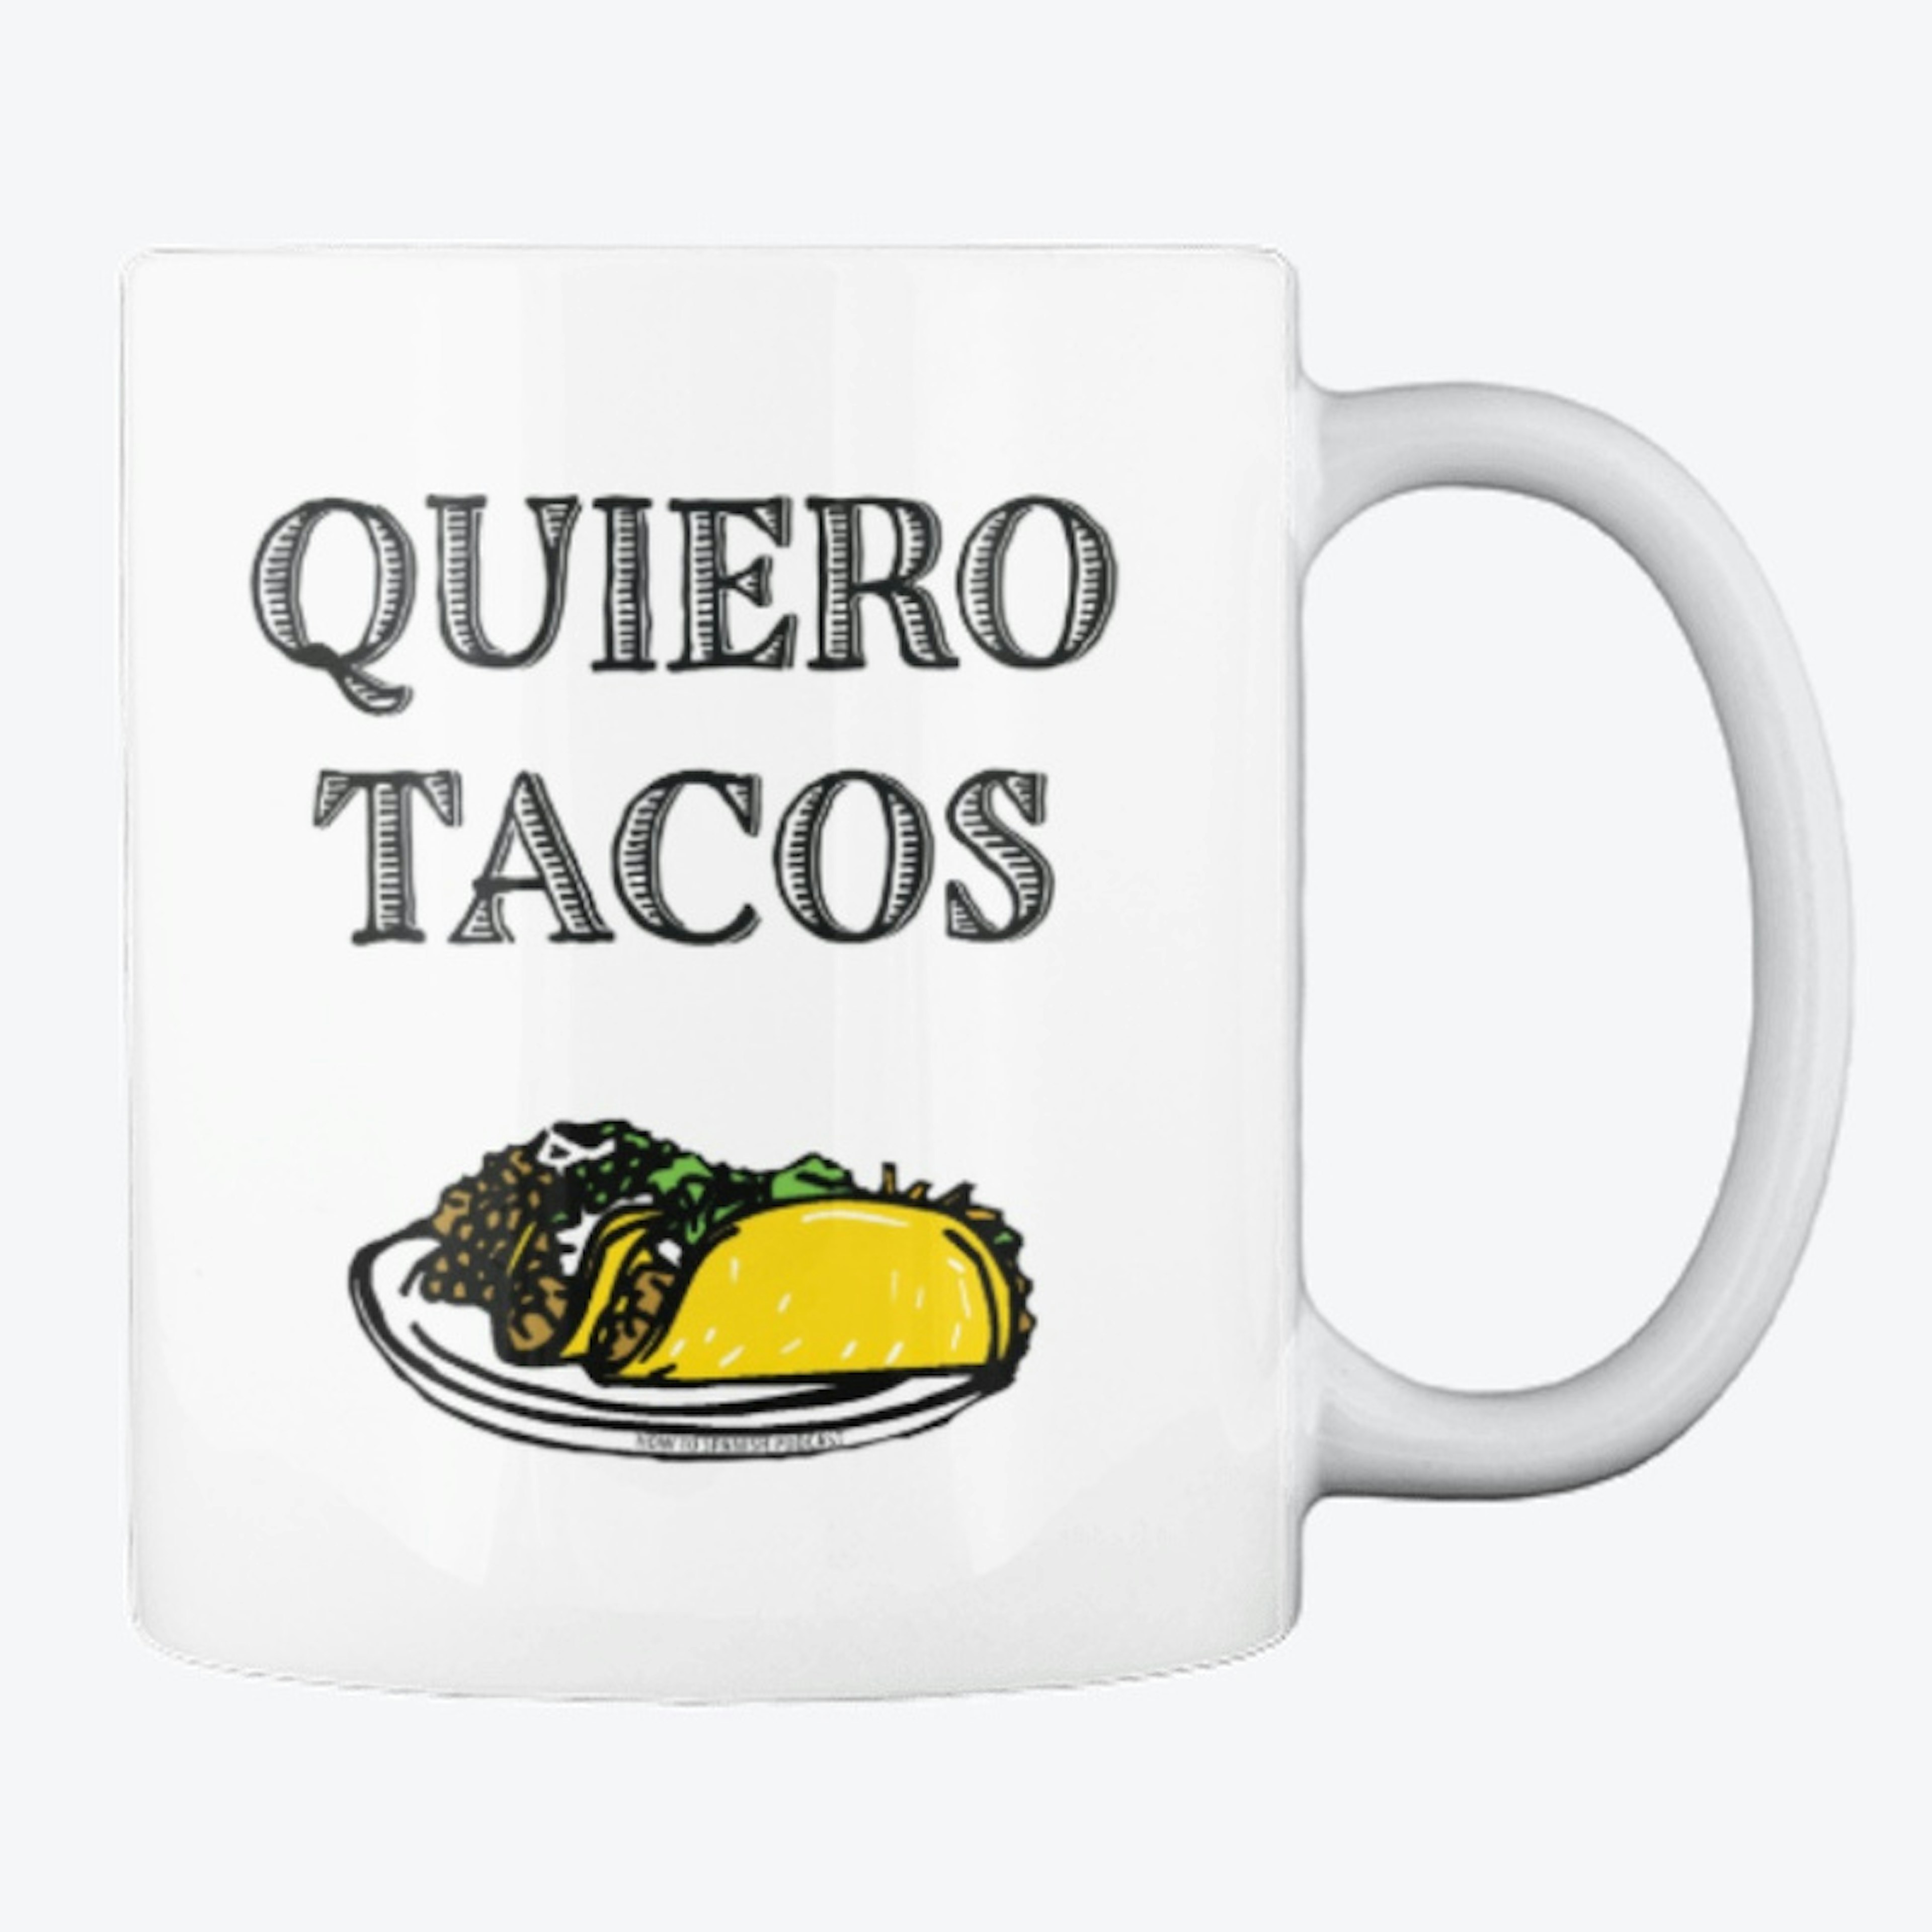 Get me tacos